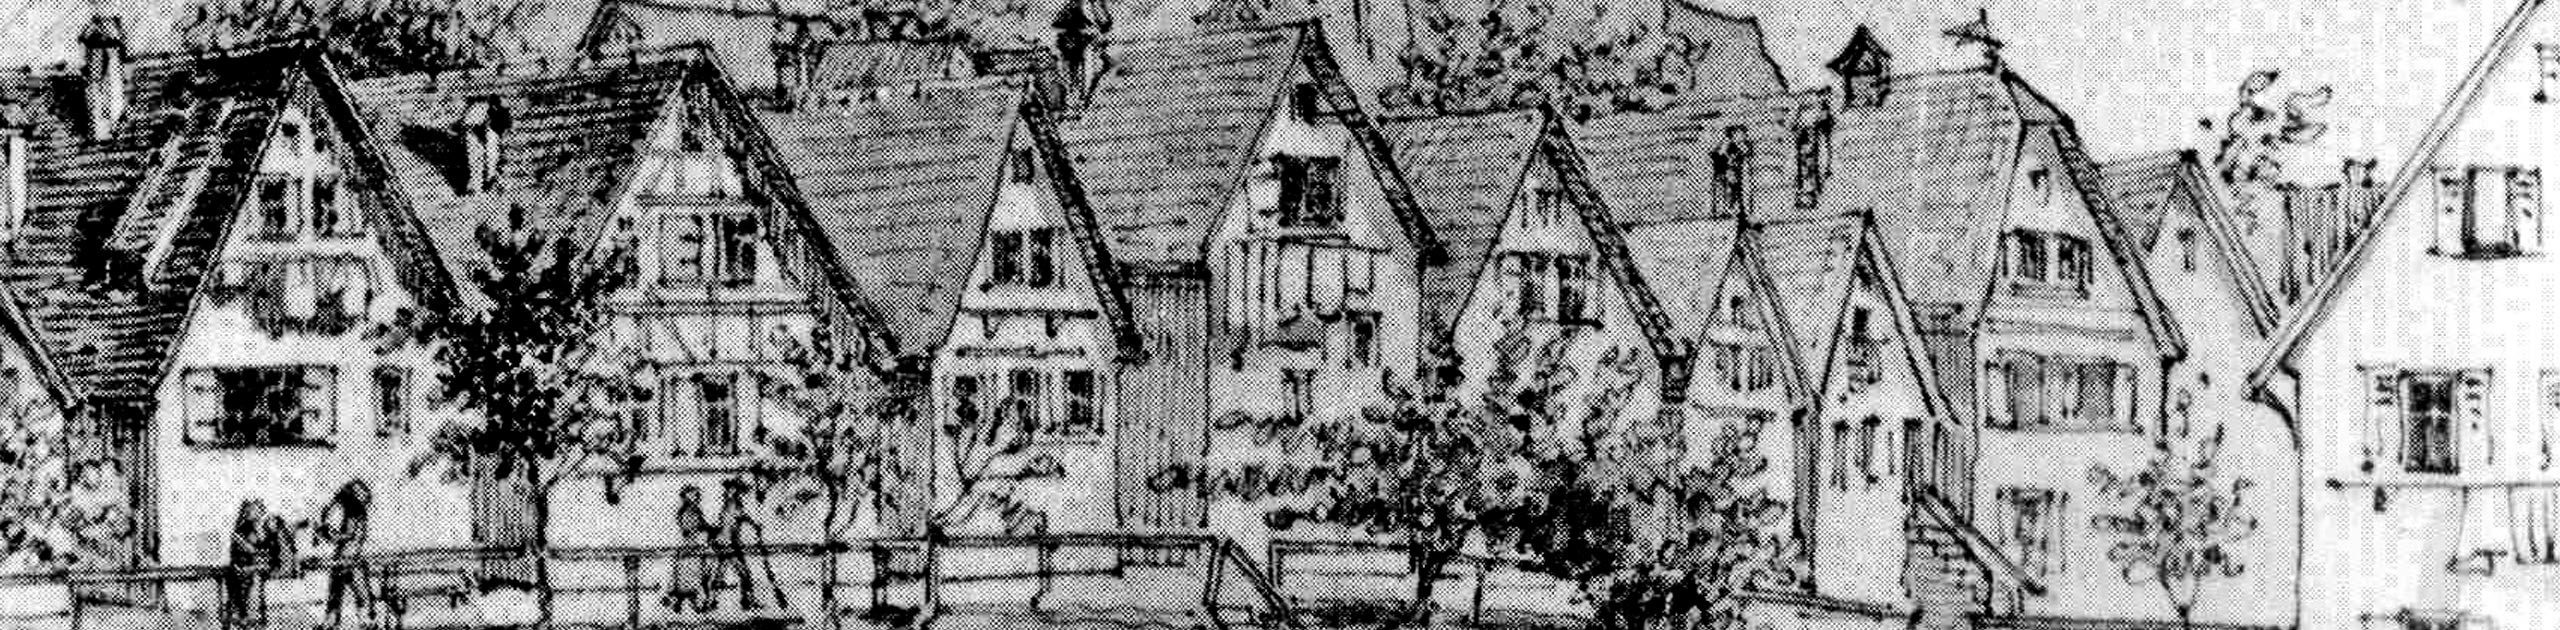 Schwarz-Weiß-Zeichnung historische Häuserreihe, Zeichnung von Pfäfflin um 1865